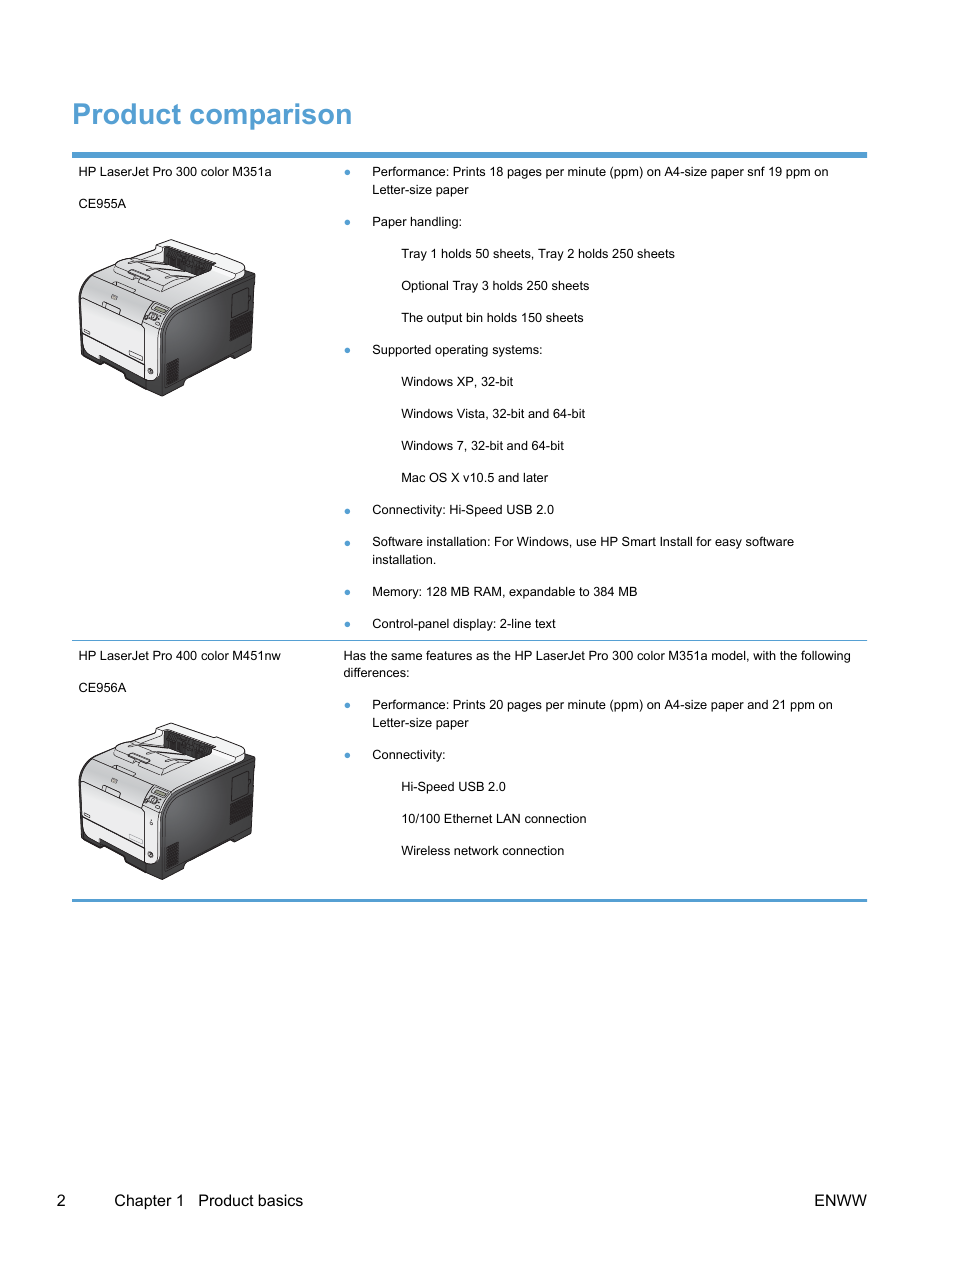 Product comparison | HP LaserJet Pro 400 color Printer M451 series User